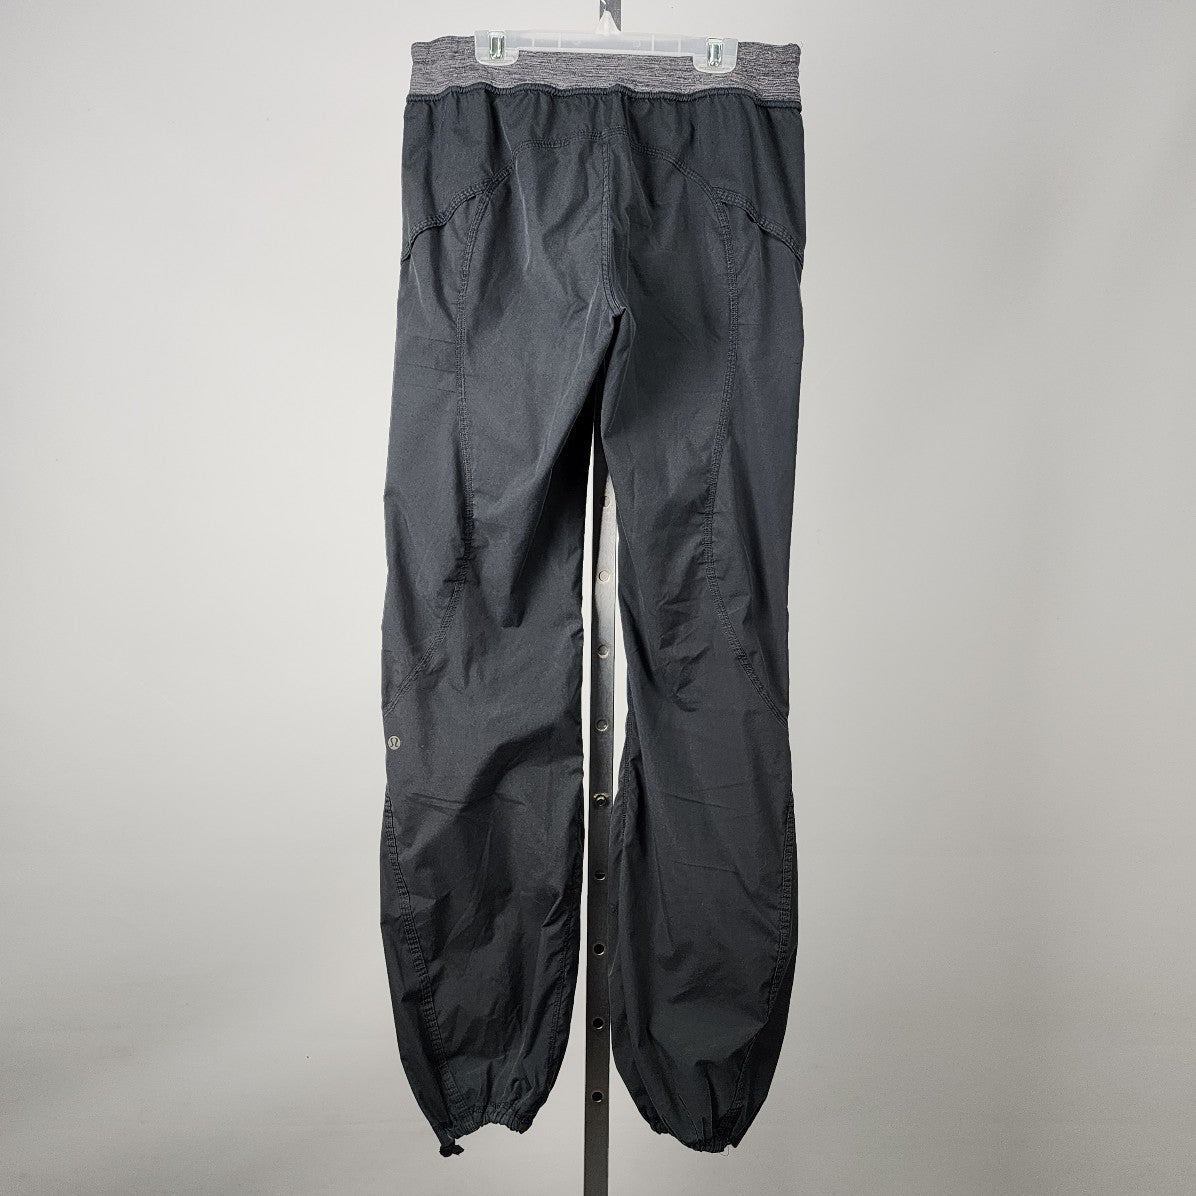 Lululemon Grey Nylon Track Pants Size 6